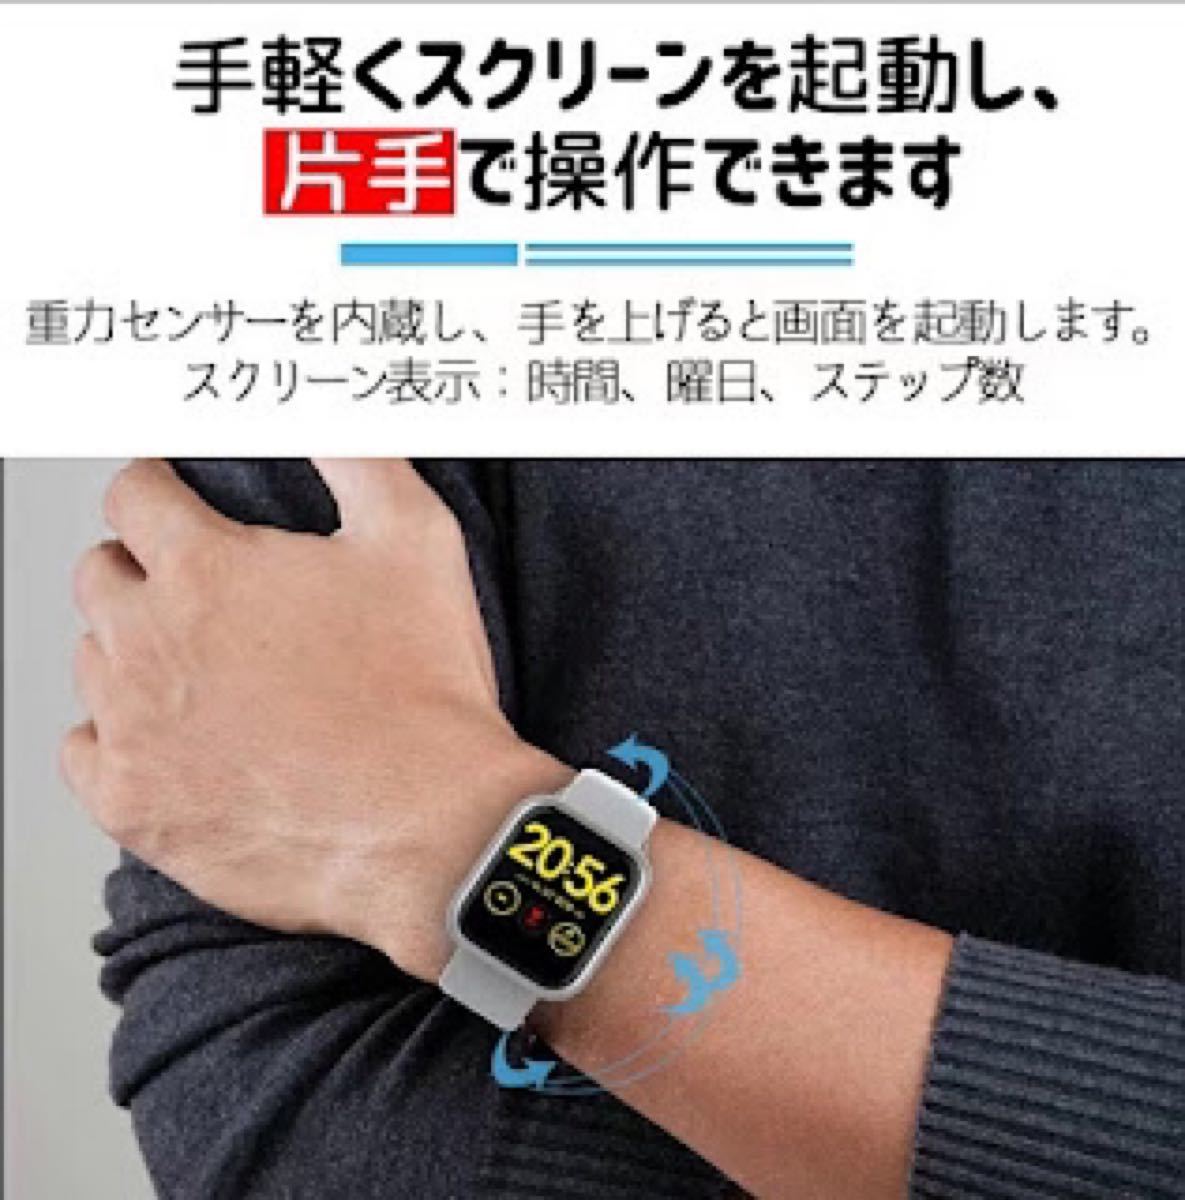 スマートウォッチ Bluetooth5.0 血圧 心拍数 文字盤 腕上げ点灯 